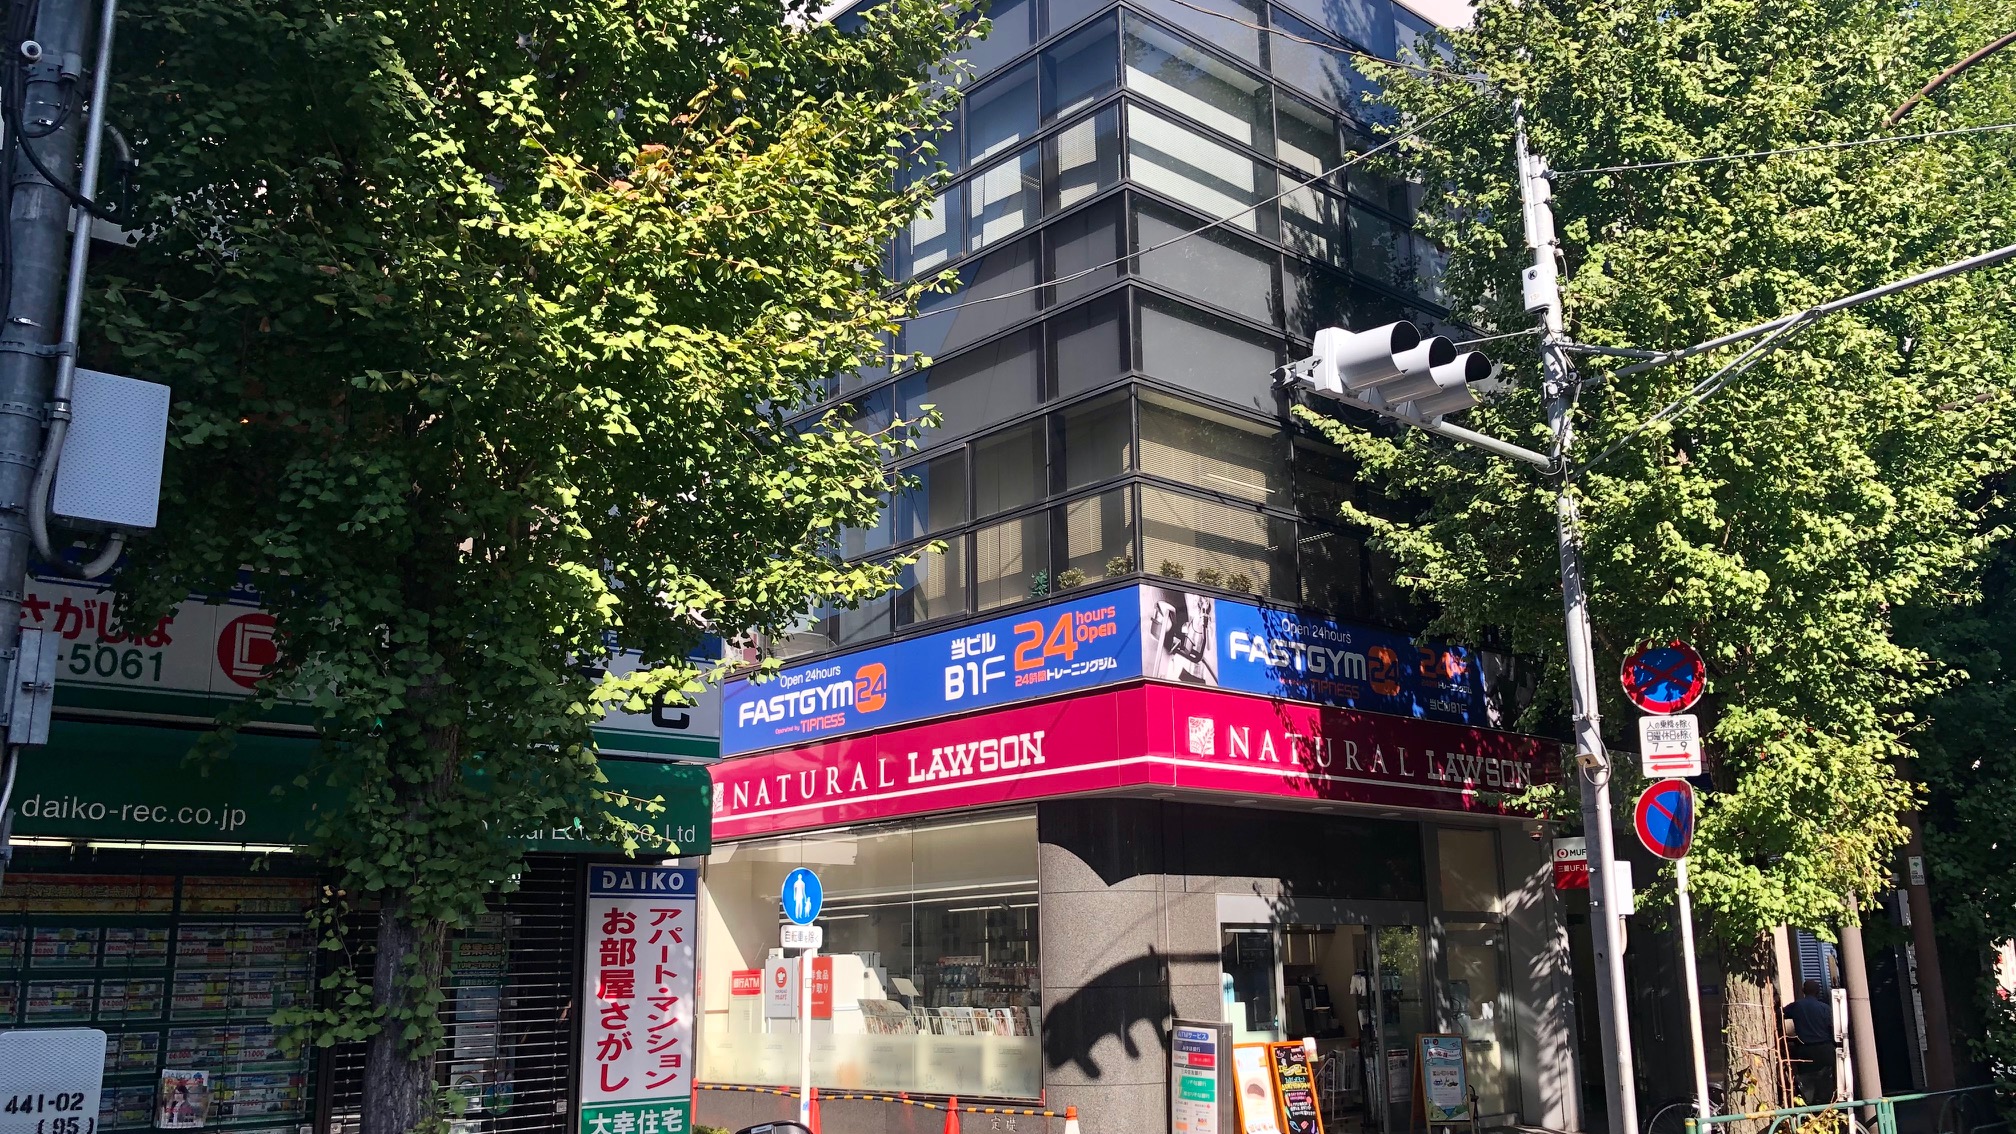 ファストジム24 新高円寺店の外観